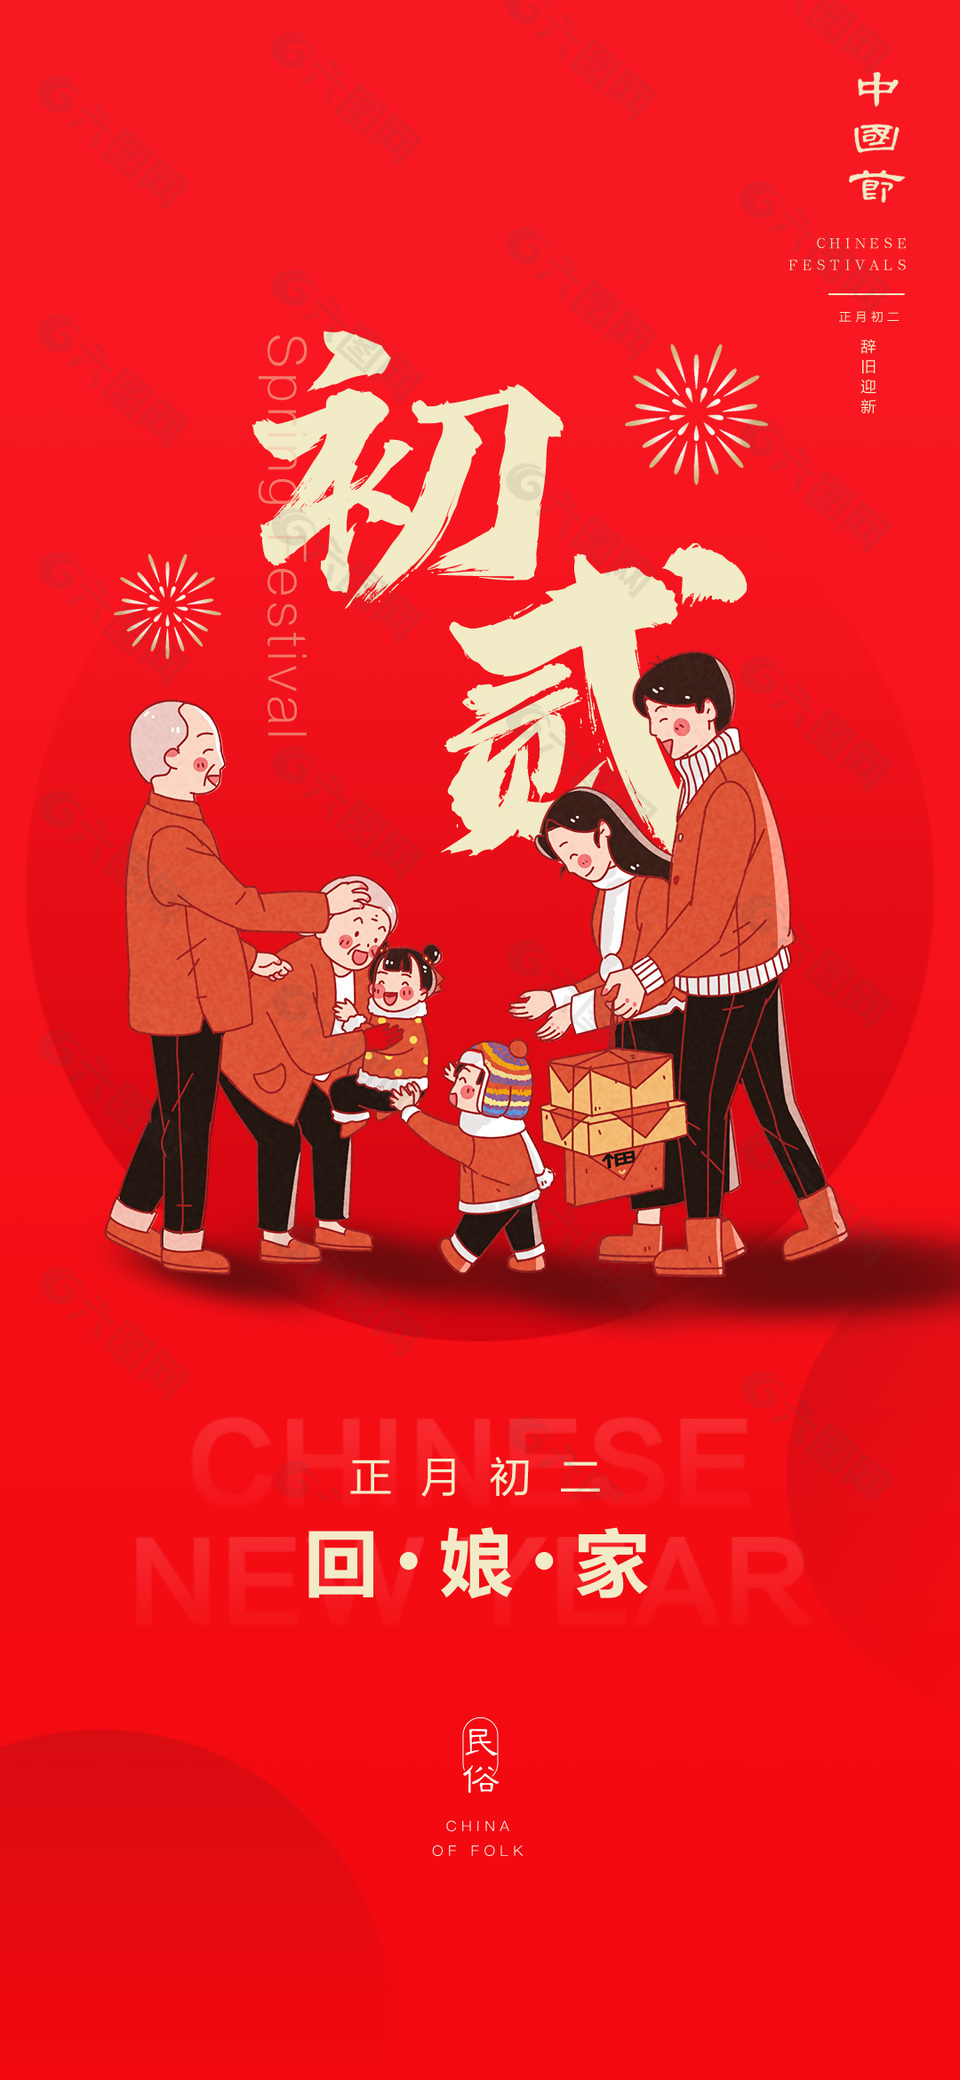 正月初二回娘家过年习俗红色插画海报